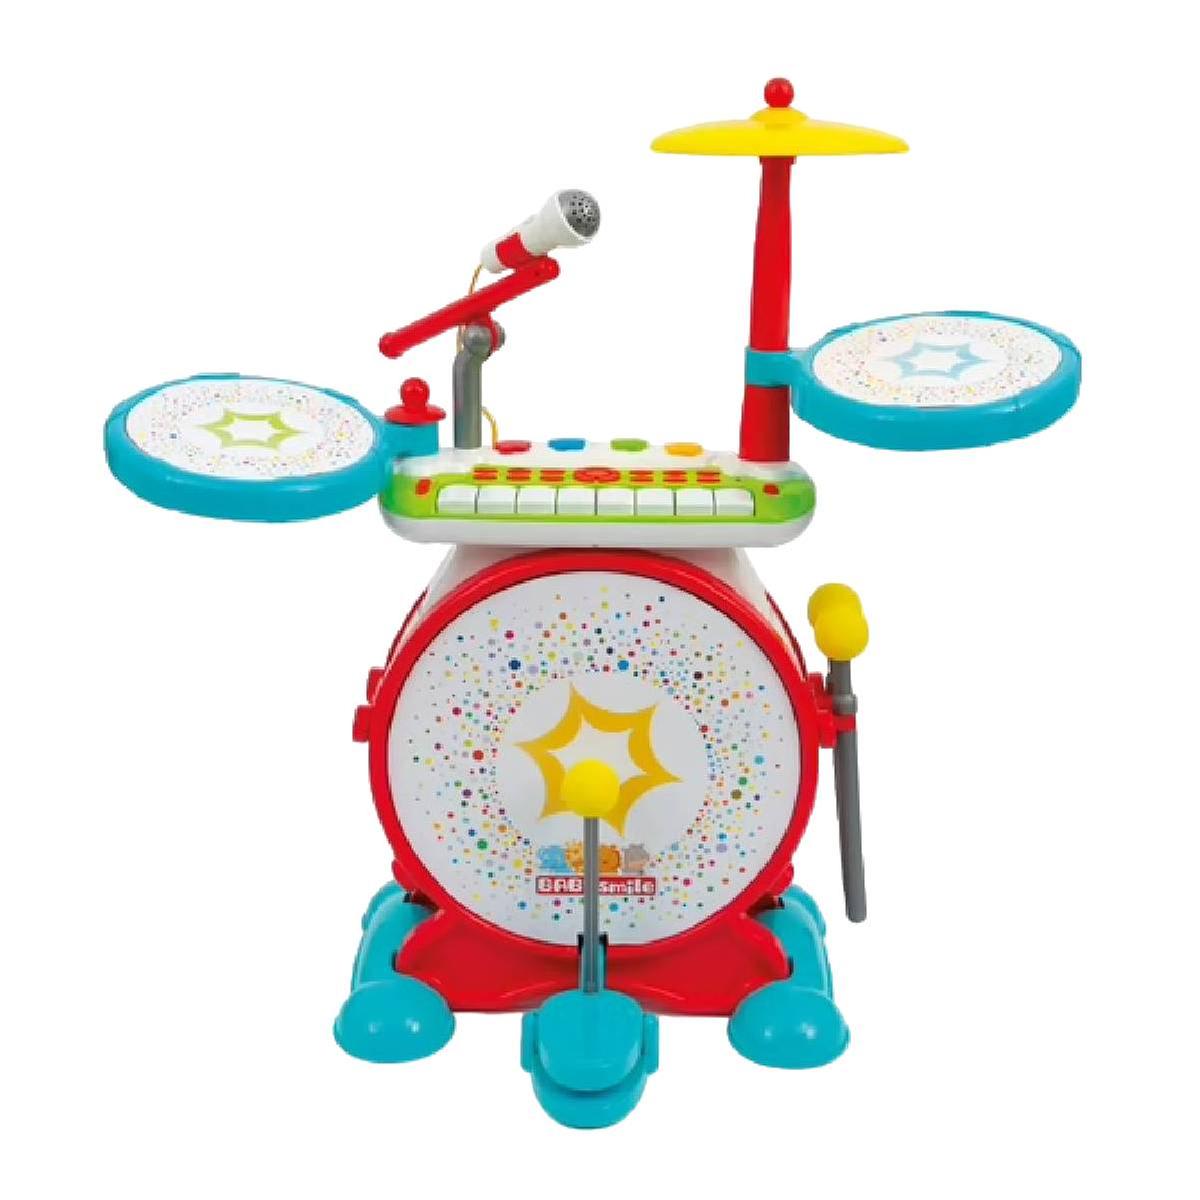 Baby Smile - Bateria eletrónica | Bruin infantil sensações bebé | Loja de  brinquedos e videojogos Online Toysrus